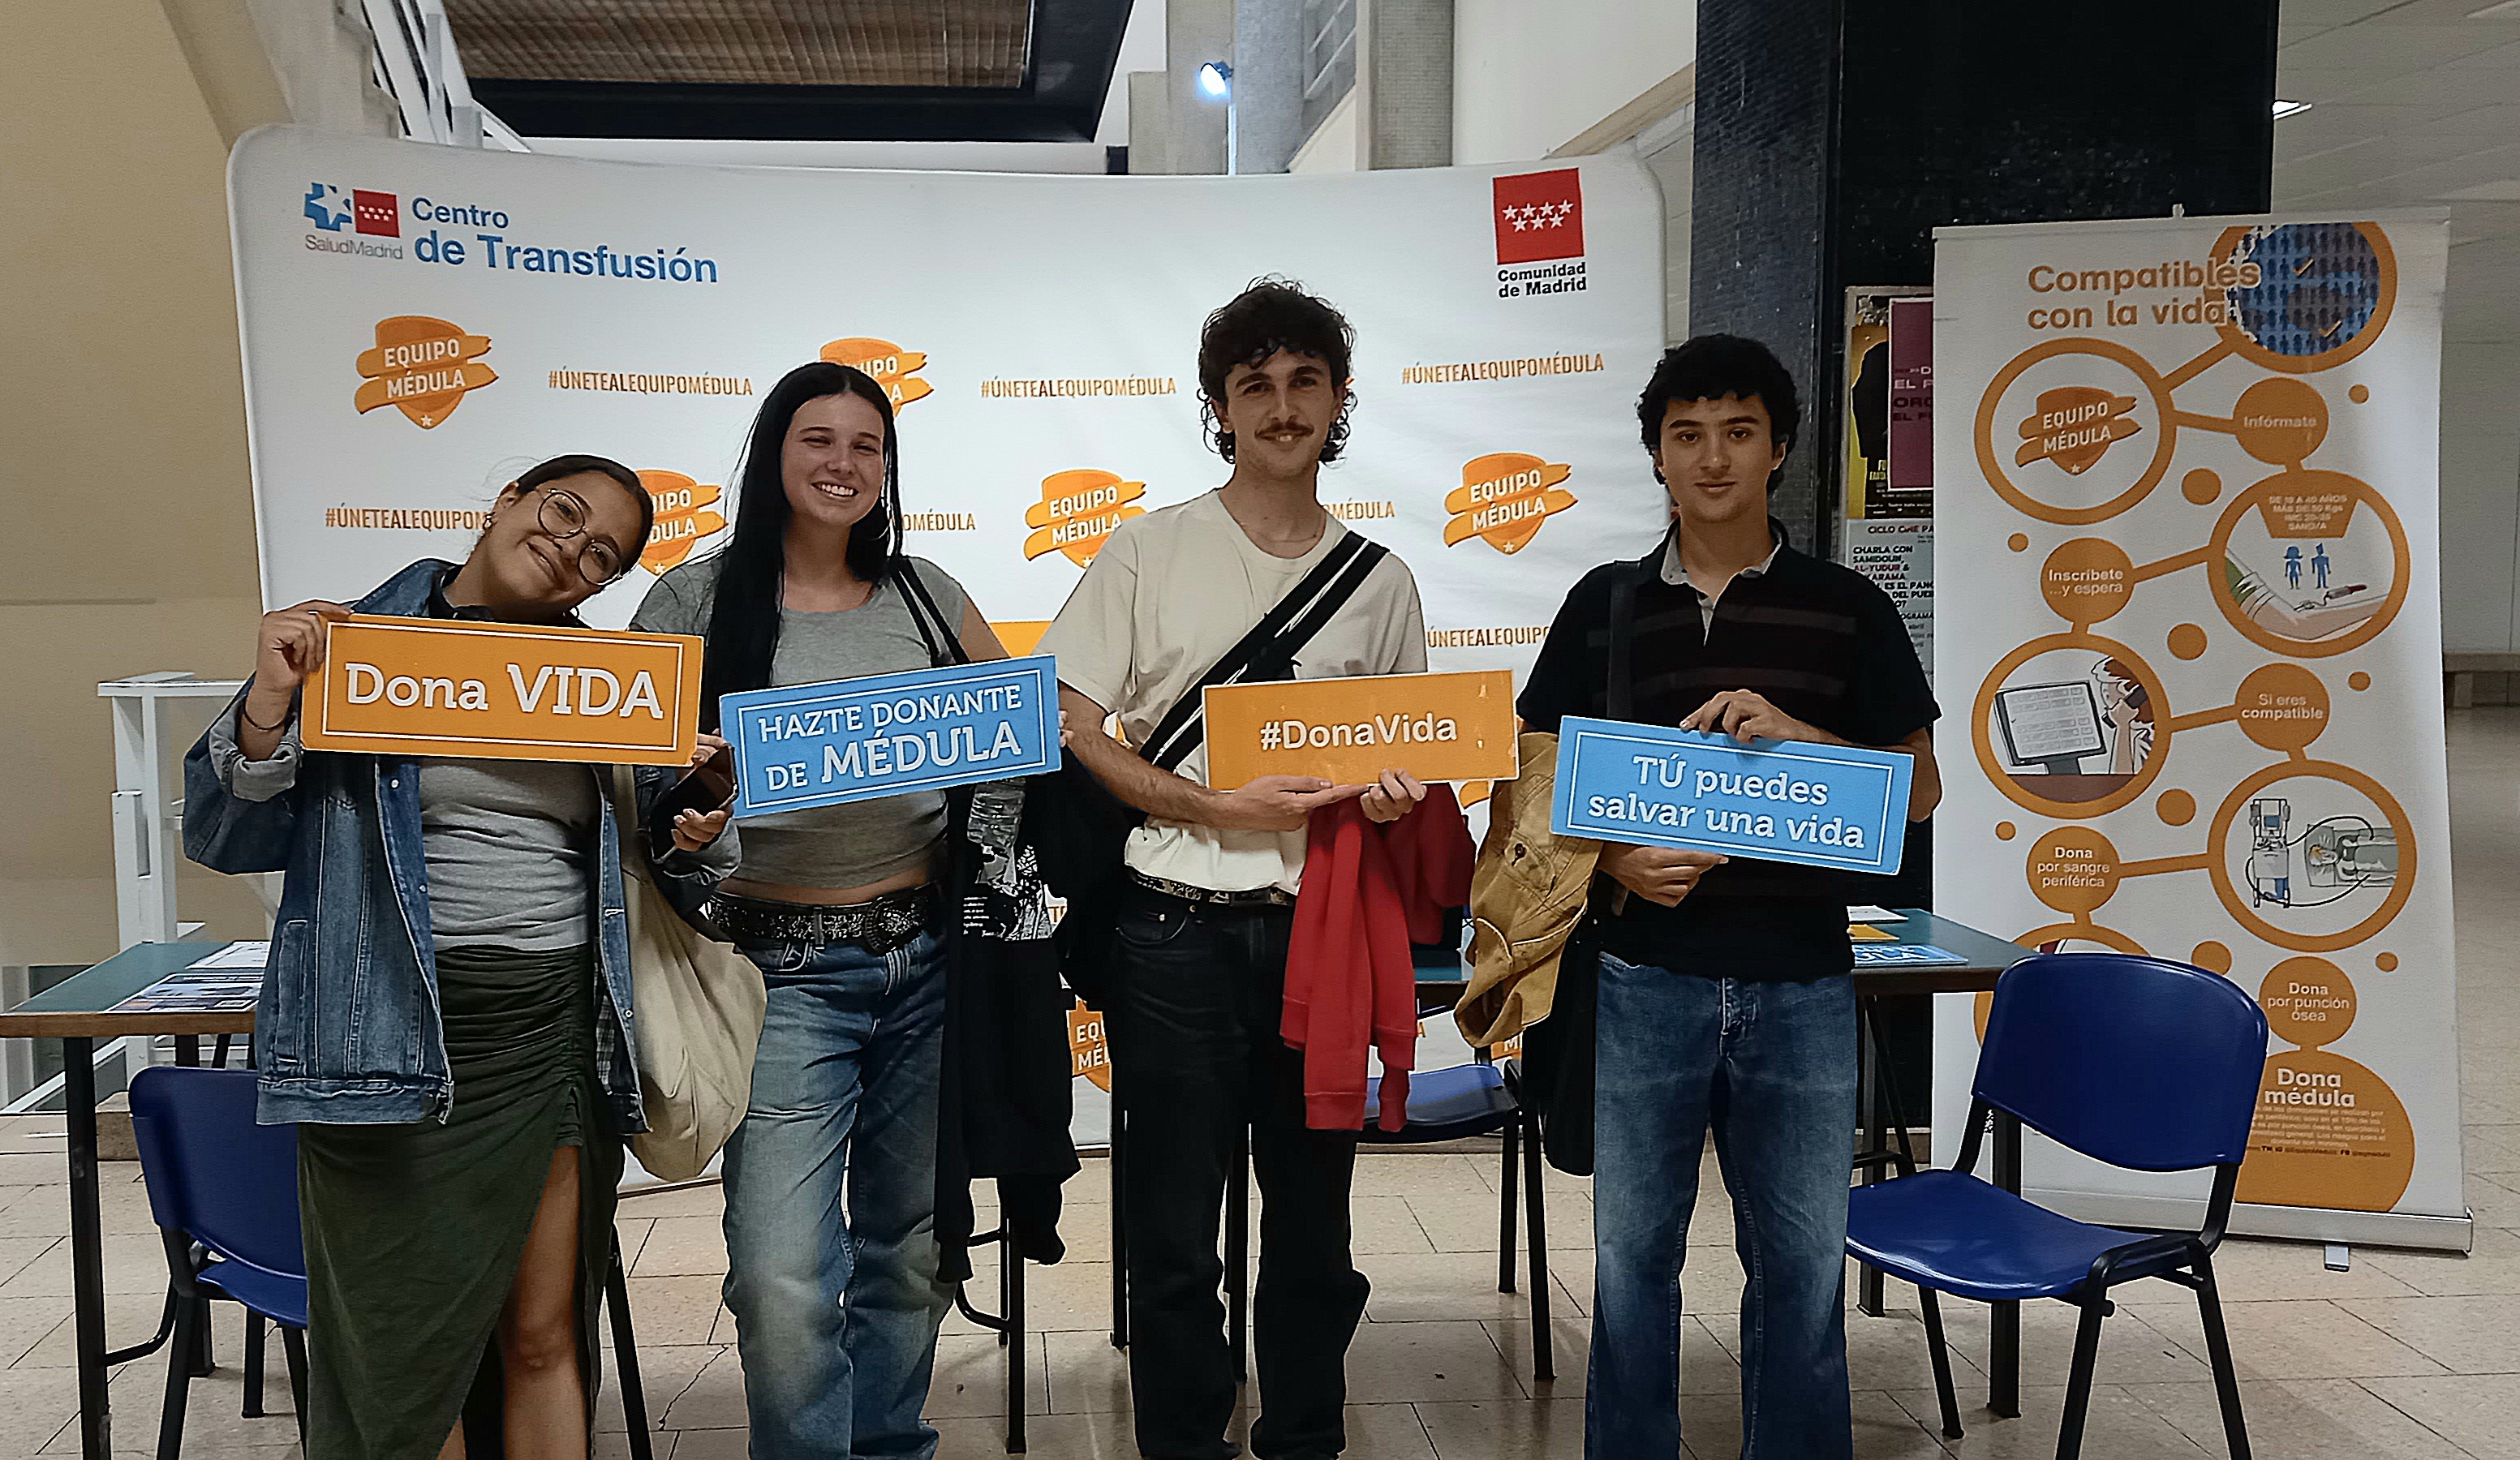 ¡Finaliza la campaña de donación de médula en la Universidad Complutense!